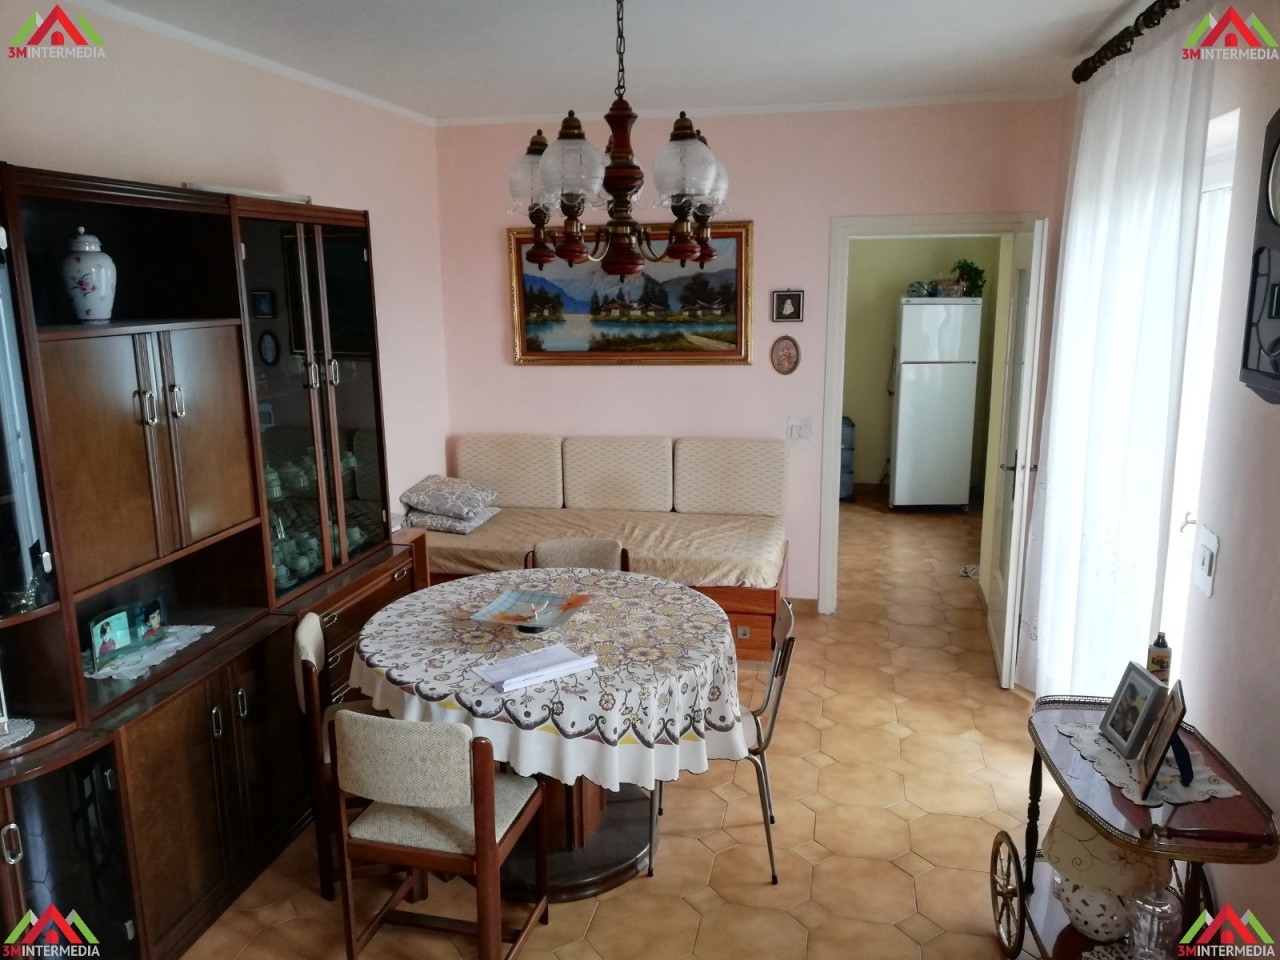 Appartamento in vendita a Lu, 5 locali, prezzo € 40.000 | PortaleAgenzieImmobiliari.it